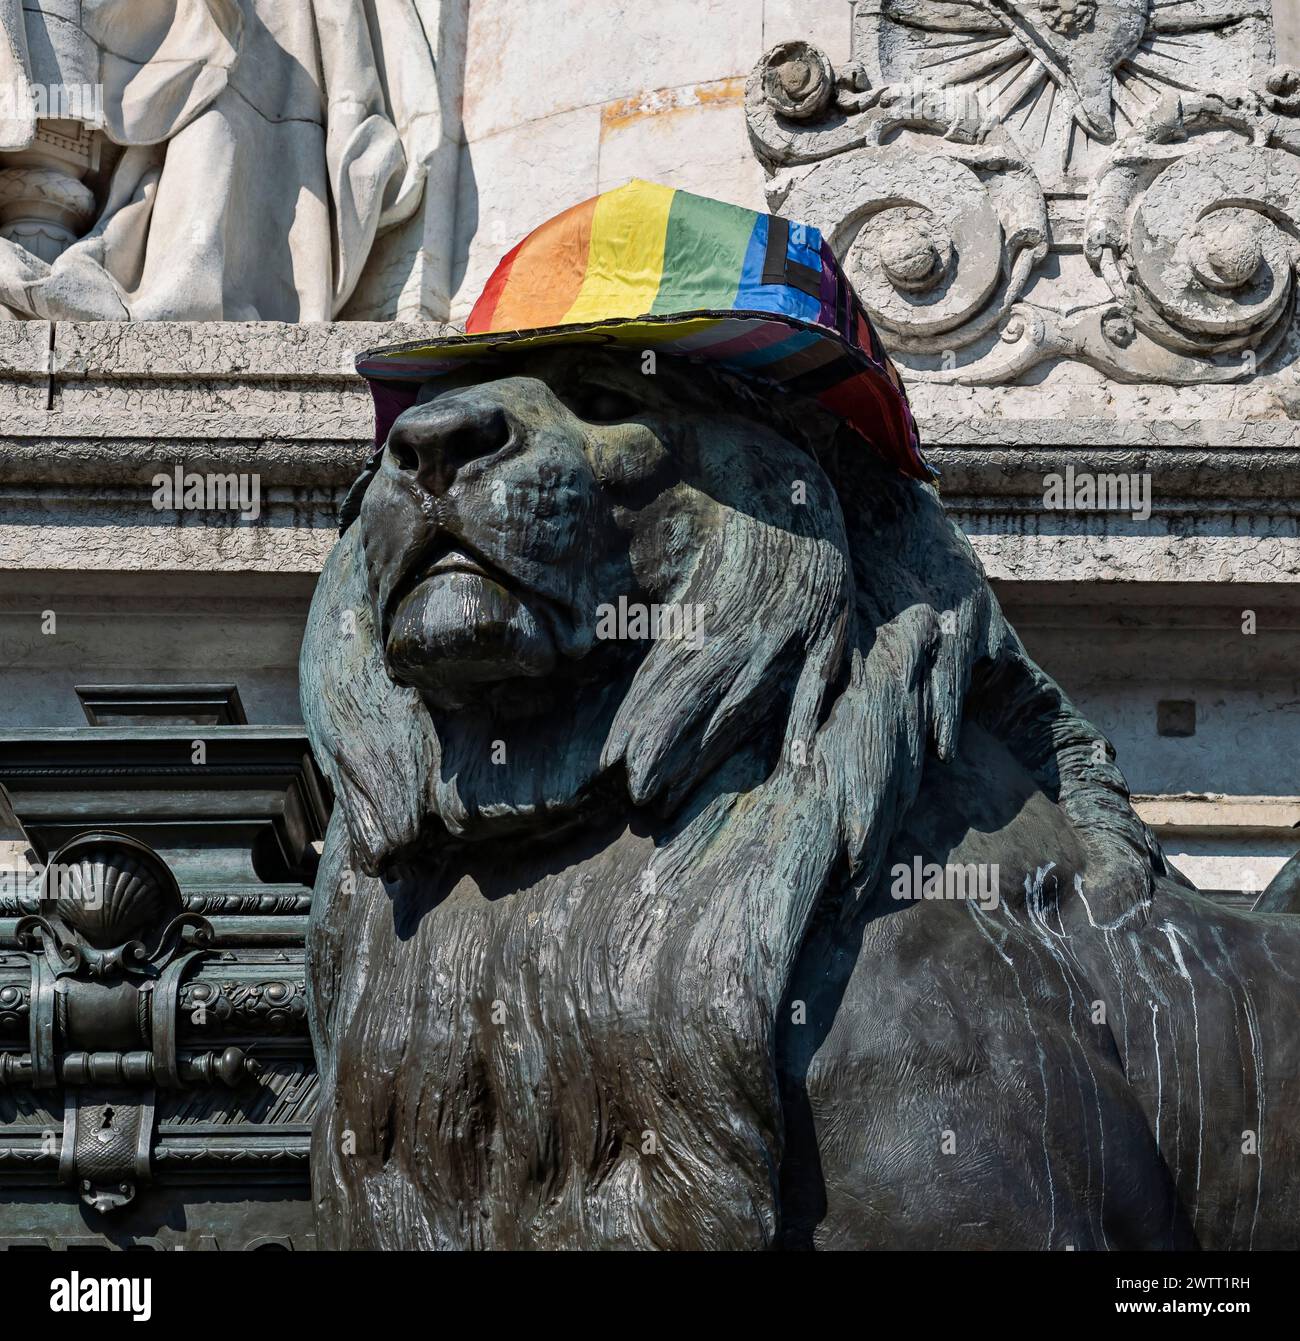 Place de la Republique Square, gay pride. Lion statue with rainbow hat. Paris, France, Europe, EU Stock Photo